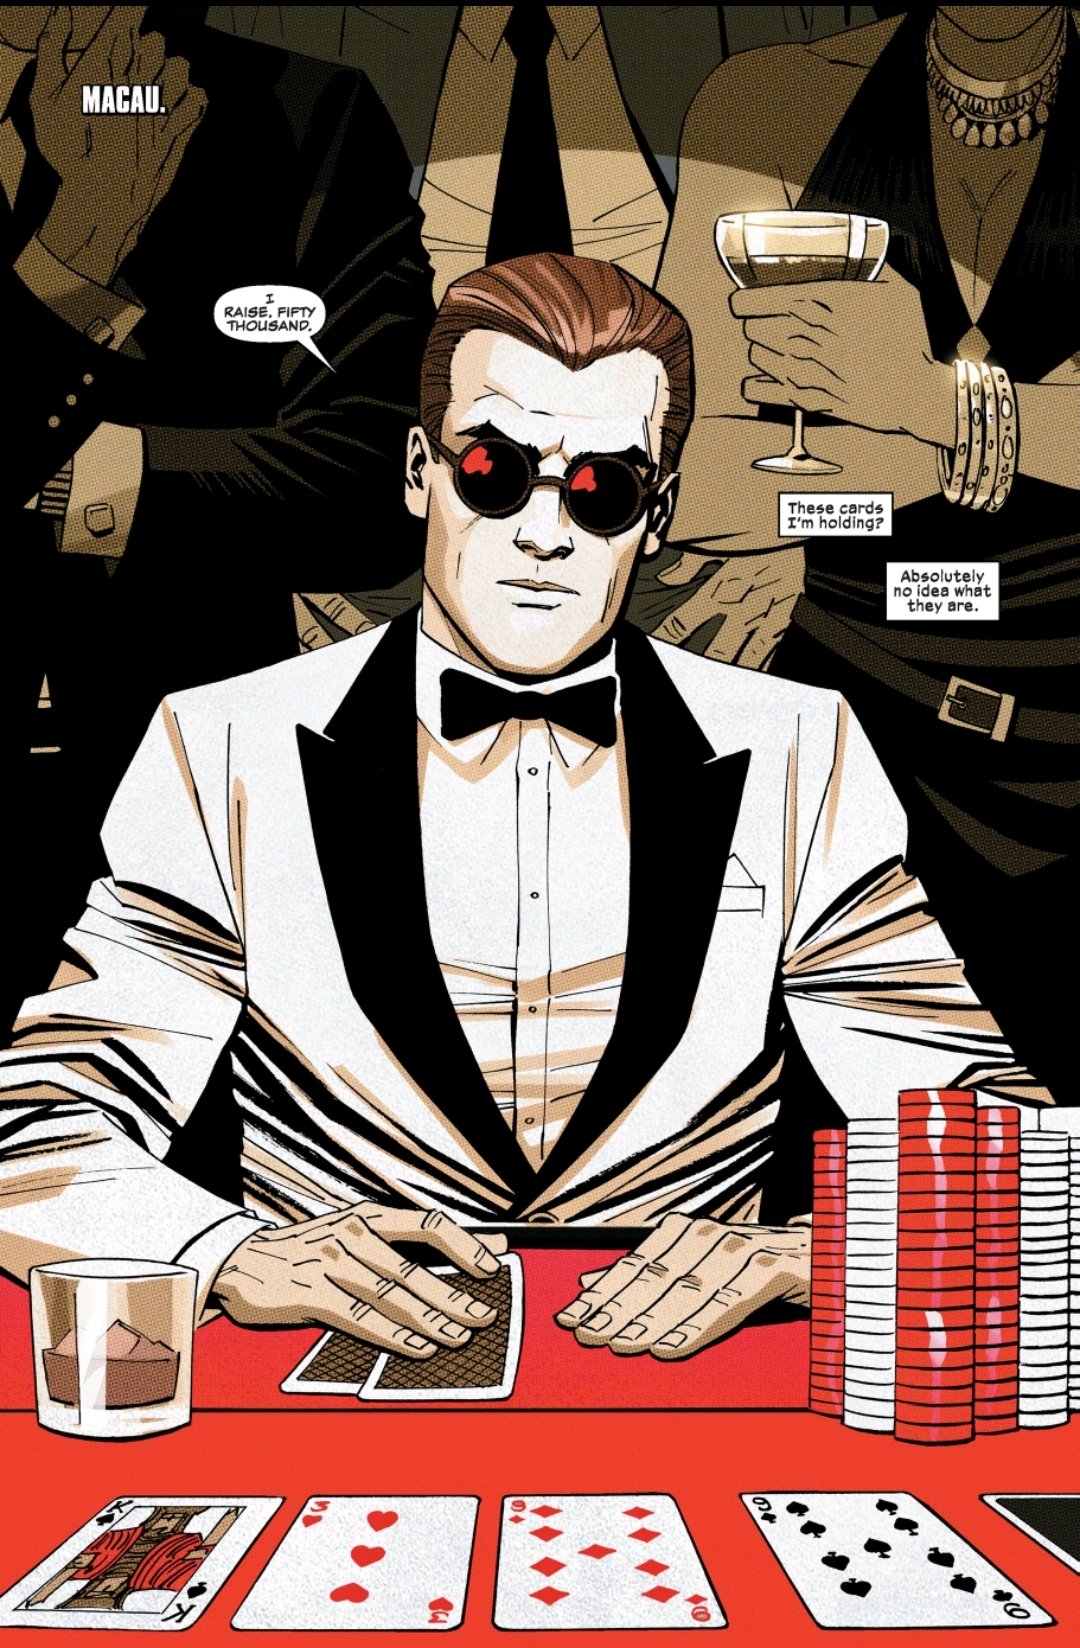 Matt Murdock in a white tux at a casino table